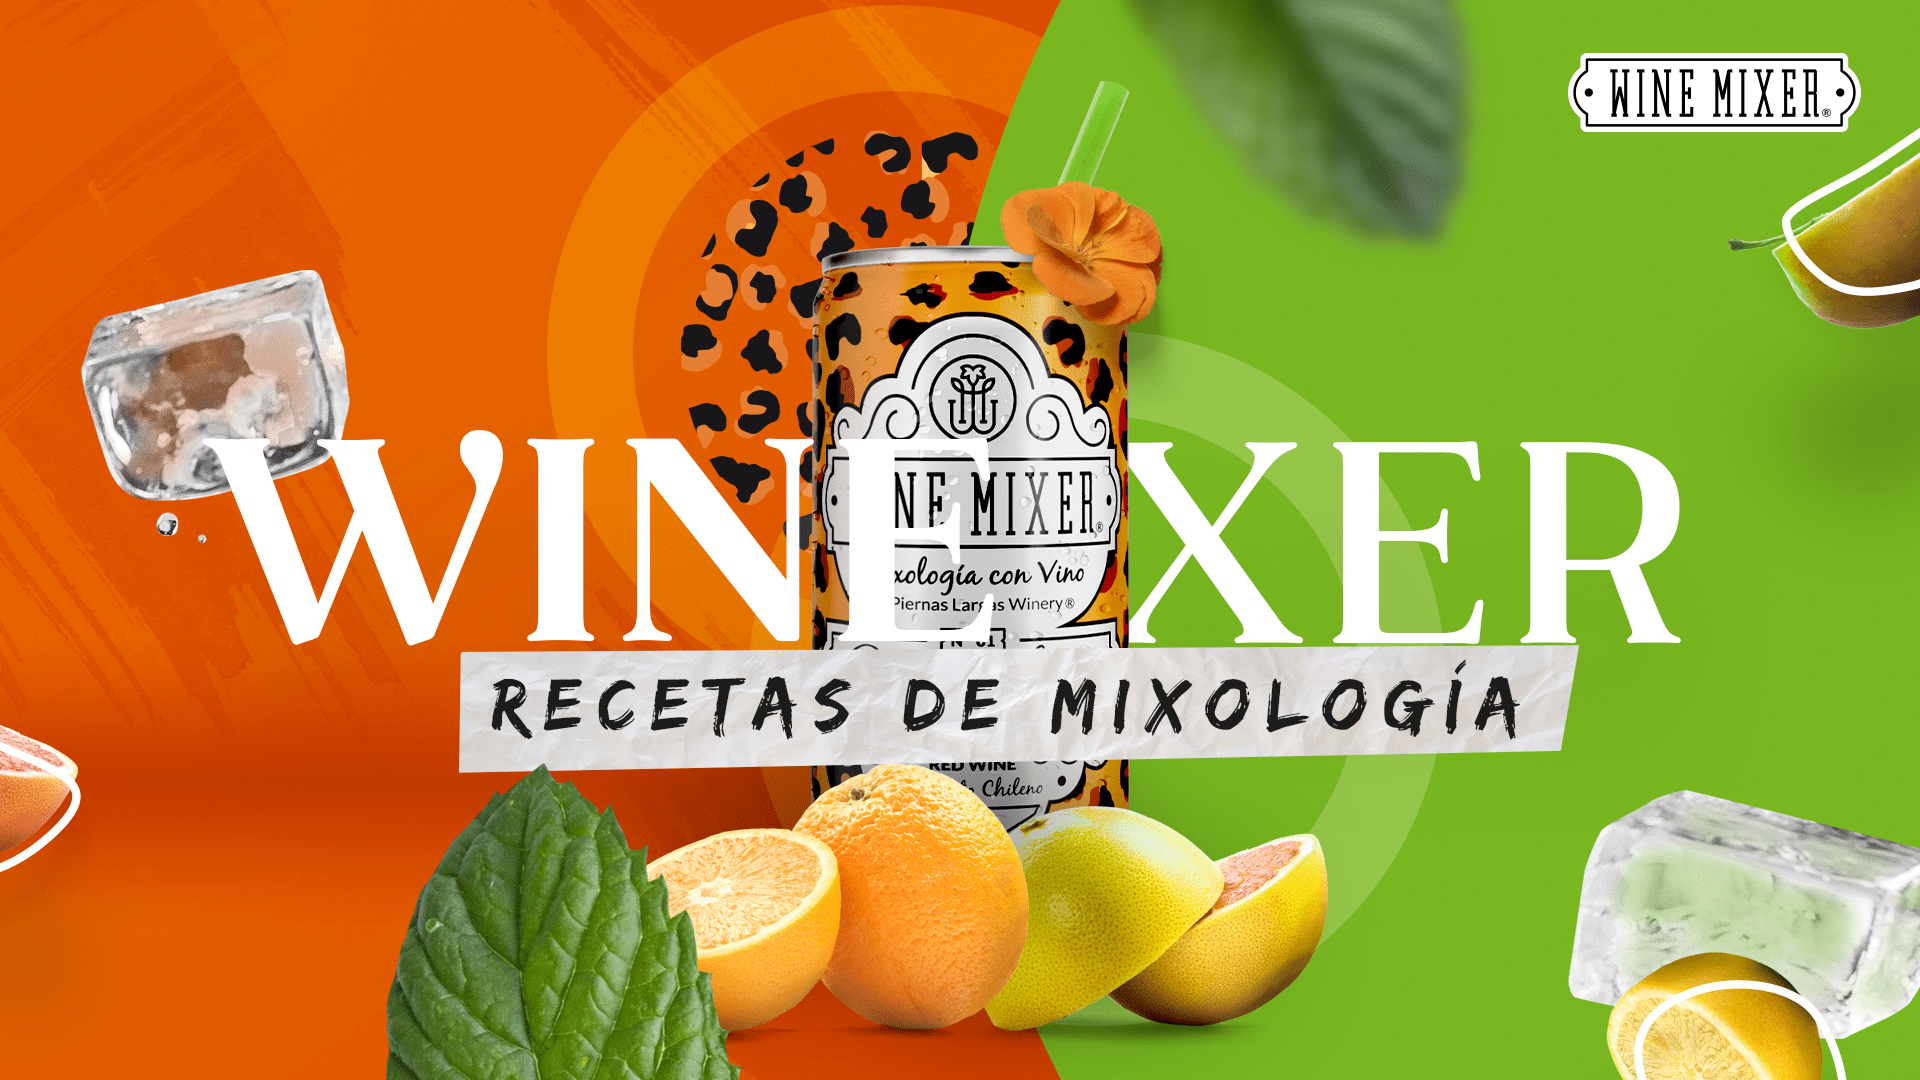 wine mixer receta de mixologia